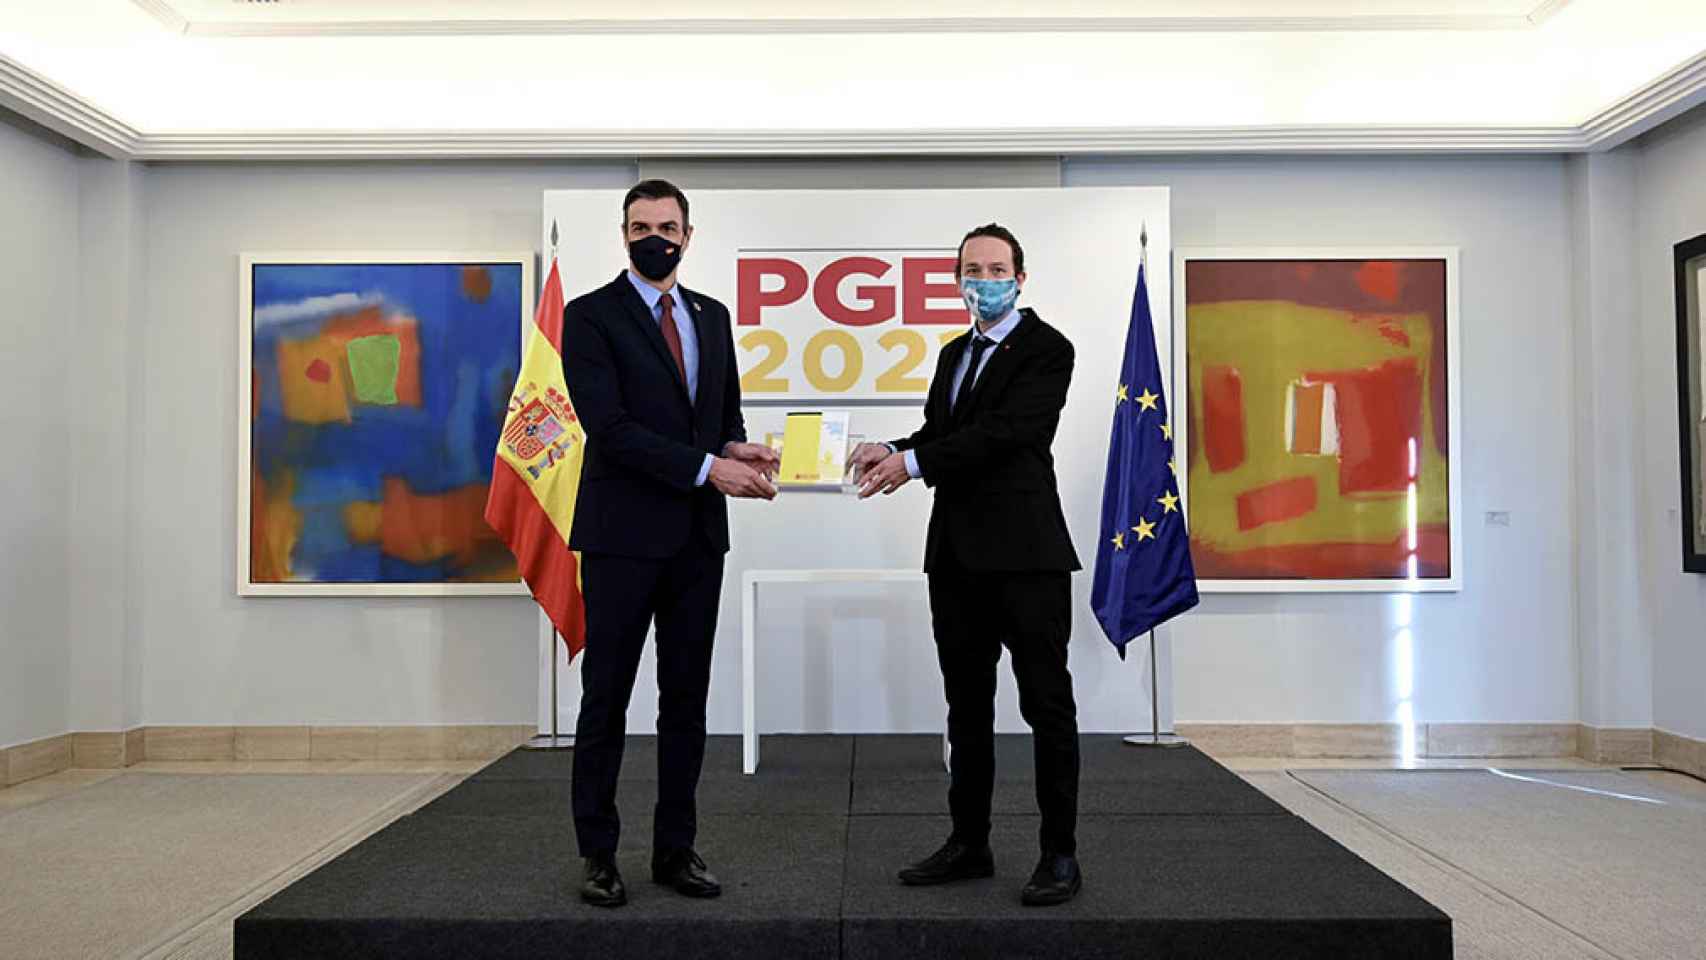 Pedro Sánchez y Pablo Iglesias, presentando los Presupuestos Generales del Estado para 2021.